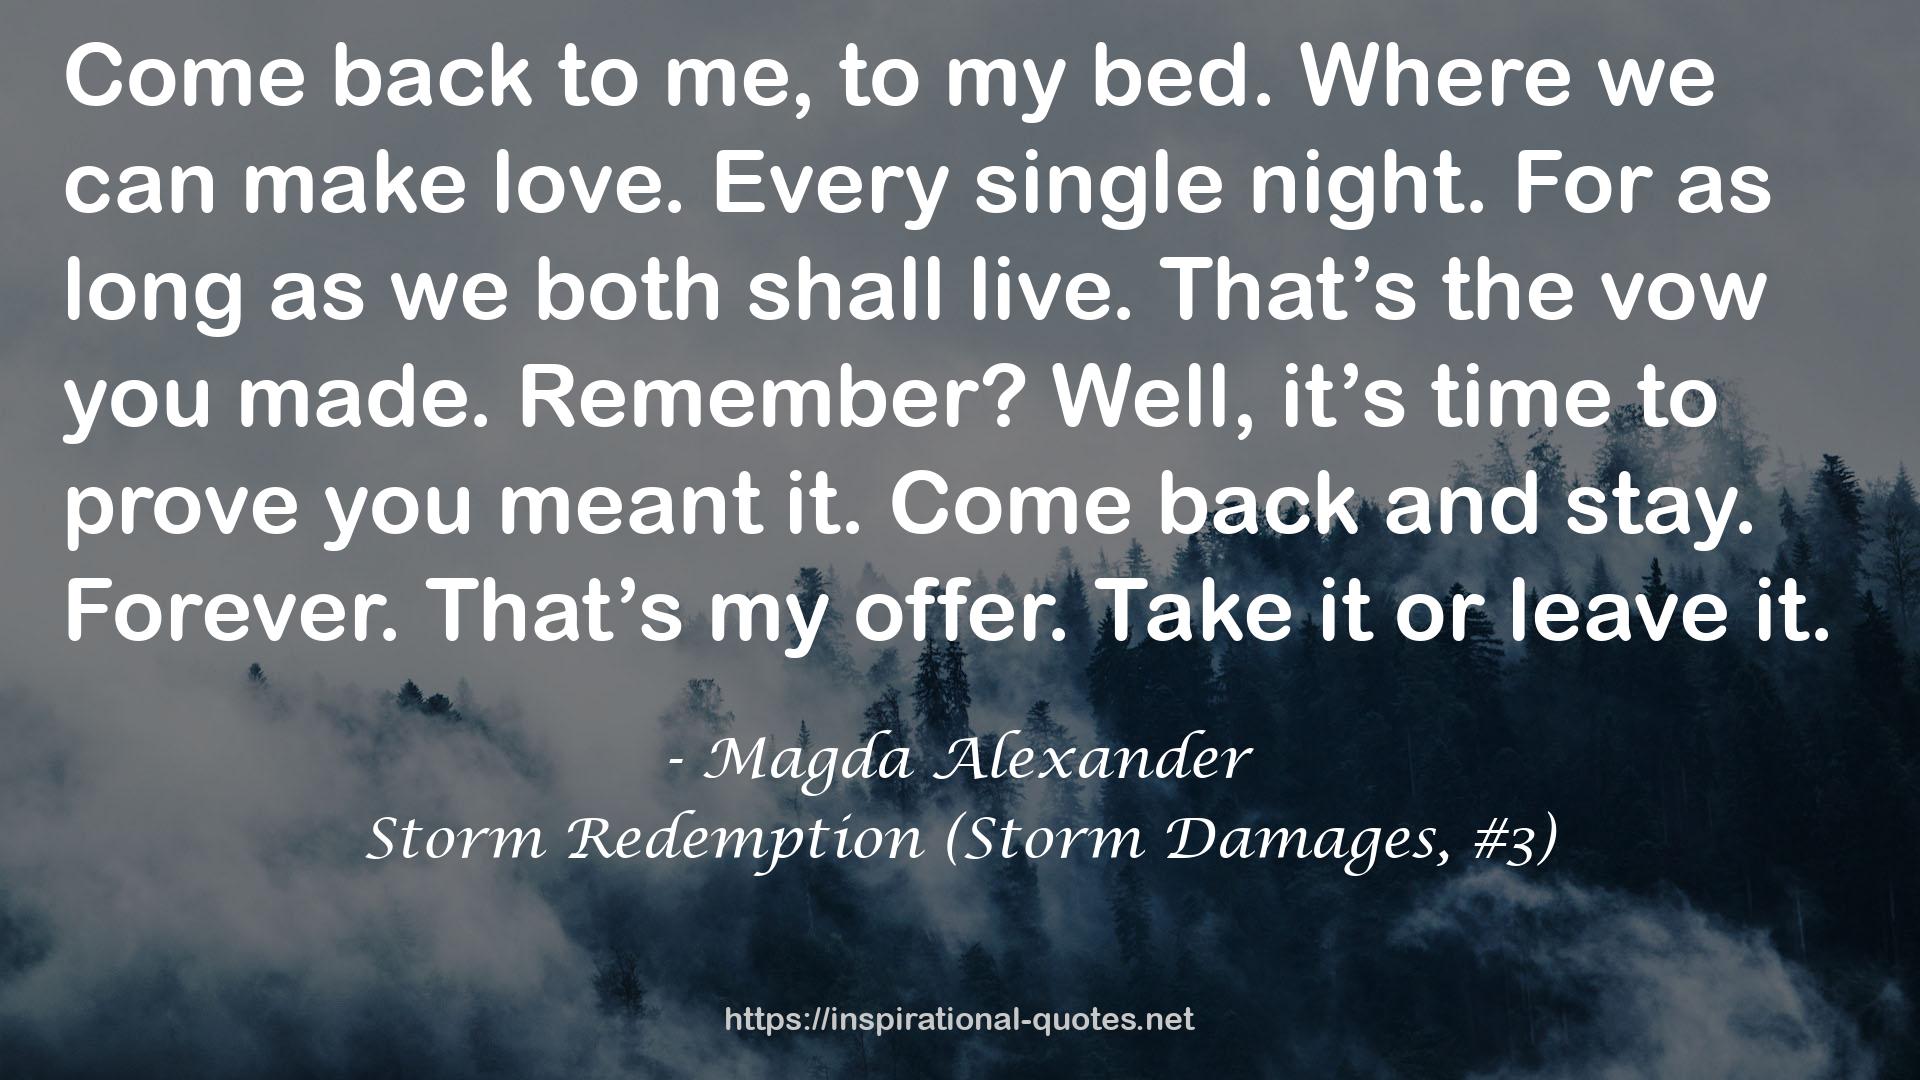 Storm Redemption (Storm Damages, #3) QUOTES